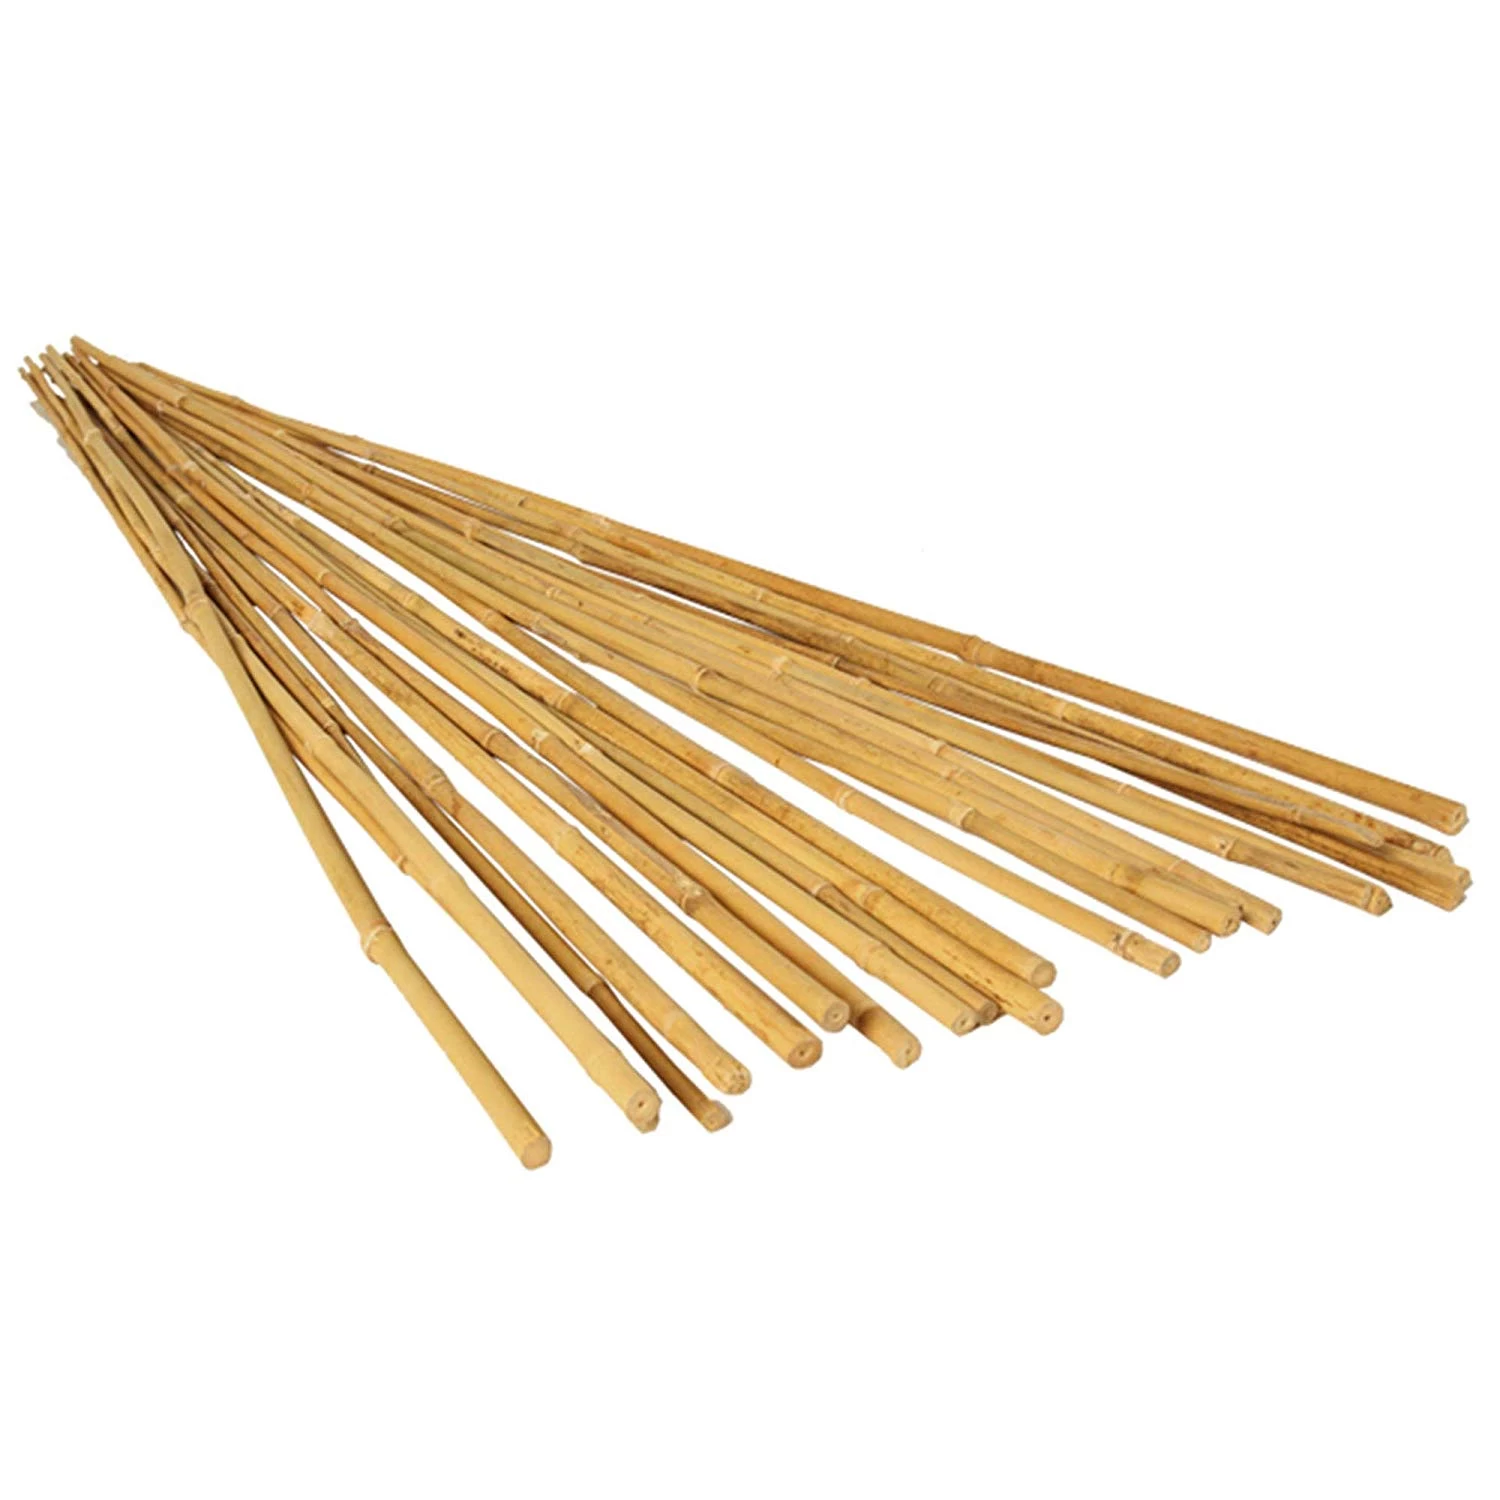 Bamboo Stake 7 FT. (20PCS/BDL)